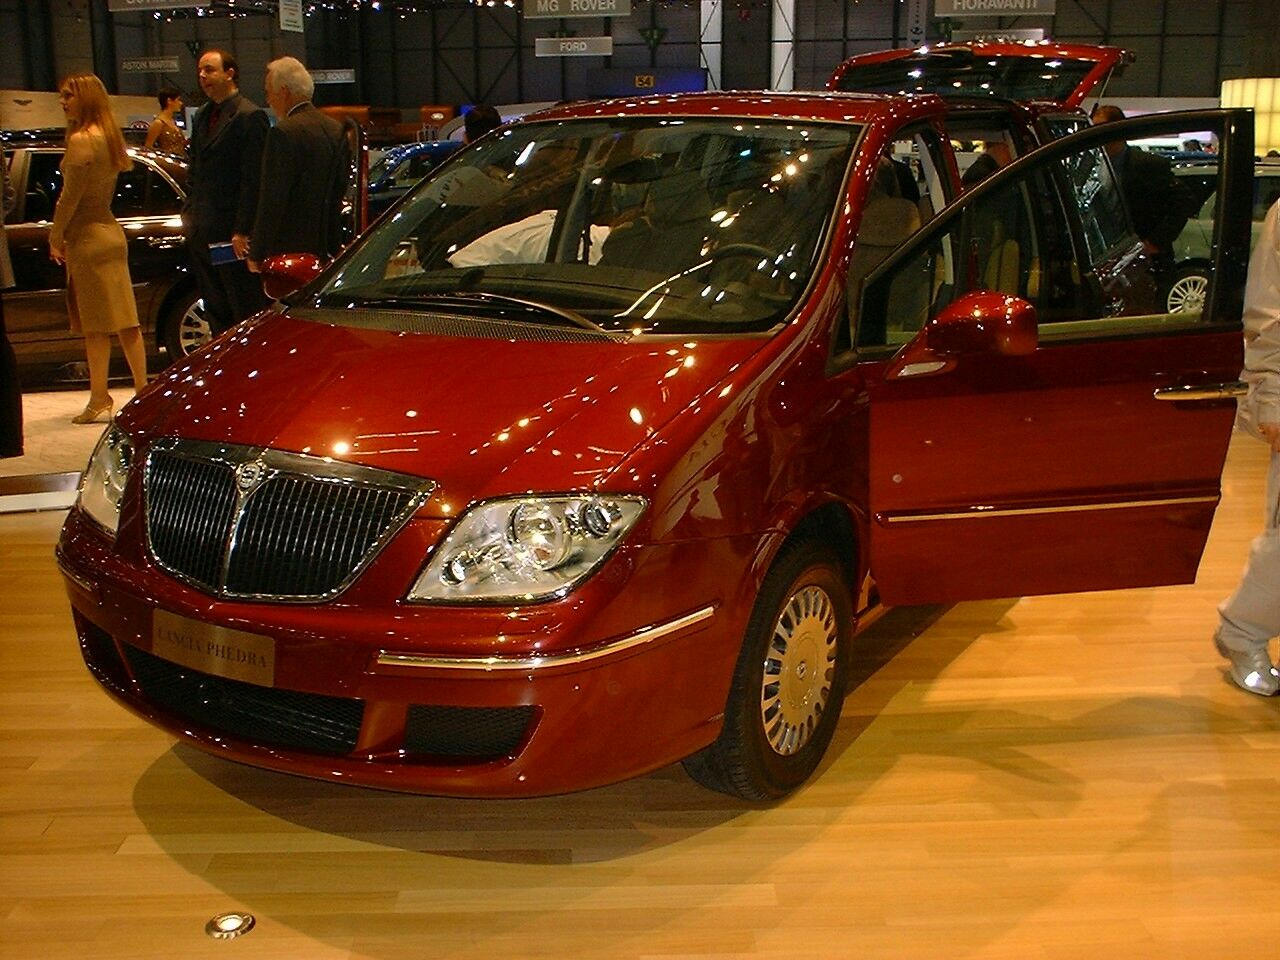 Lancia Phedra 2.2 JTD 16v Emblema at the 2003 Geneva Motor Show